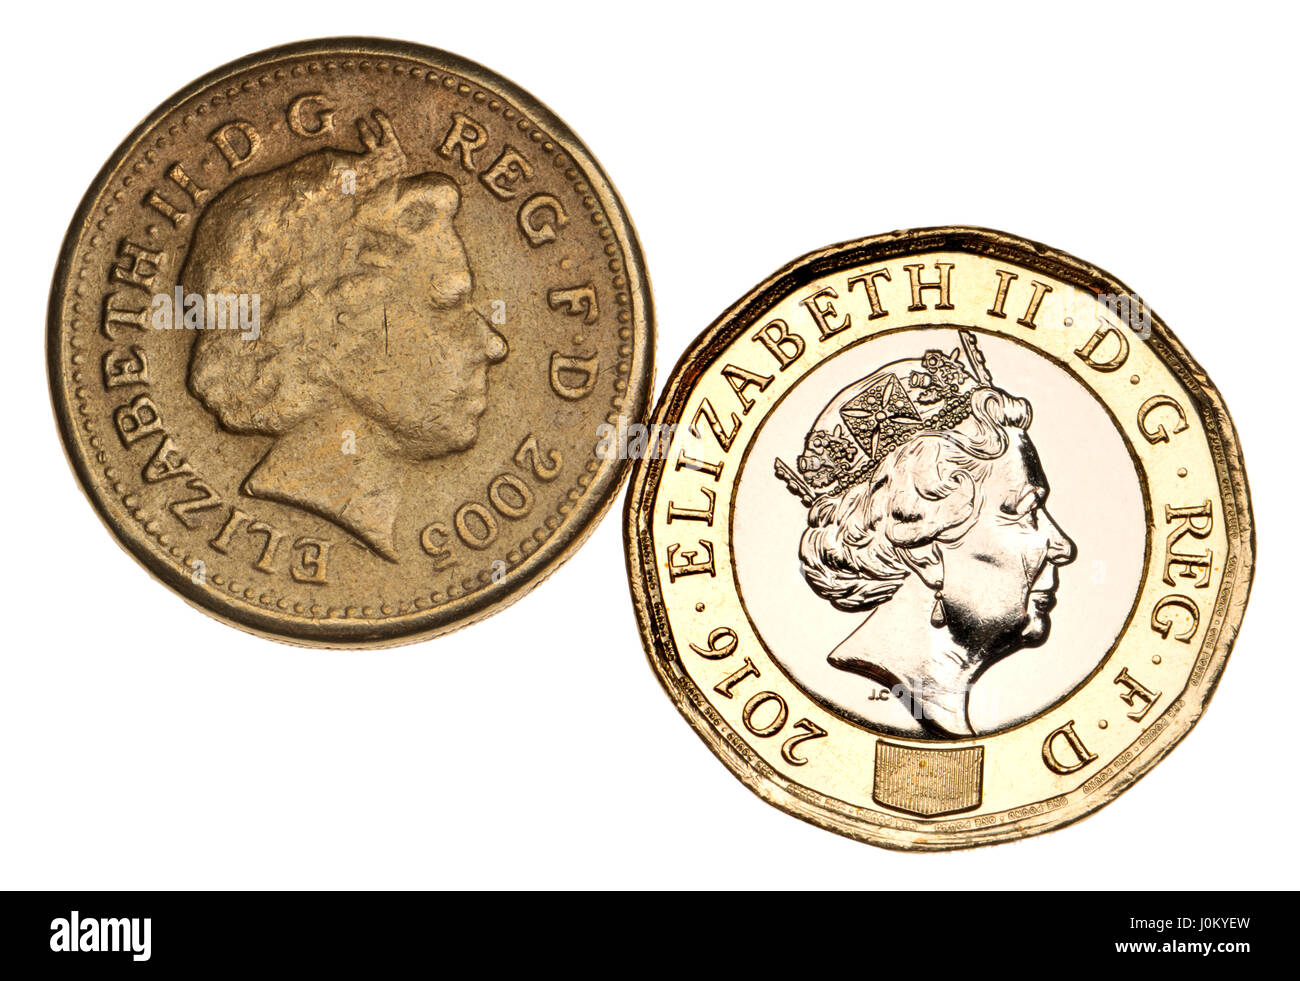 British pound Coins - douze faces 2017 bimétalliques version (2016) du côté d'une vieille pièce de monnaie contrefaite montrant une mauvaise définition et détail Banque D'Images